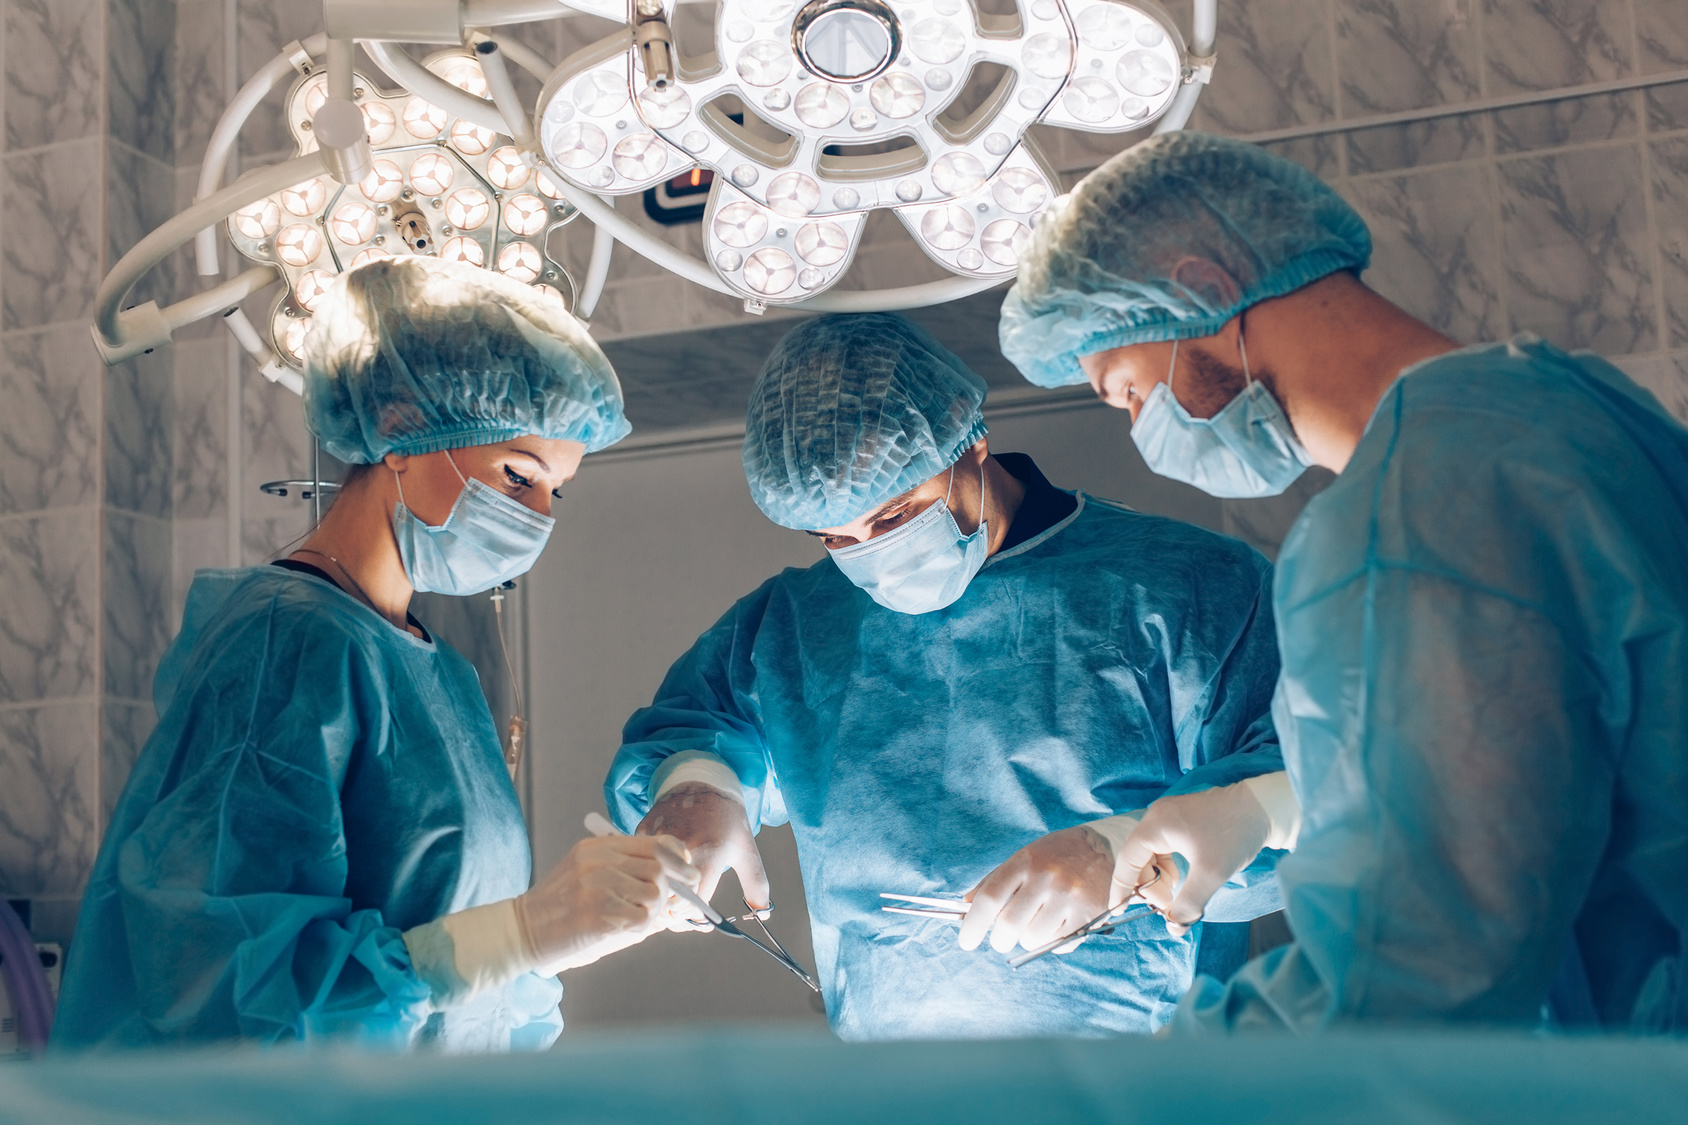 Krankenhaus verweigert Flüchtlinge lebensnotwendige Organspende